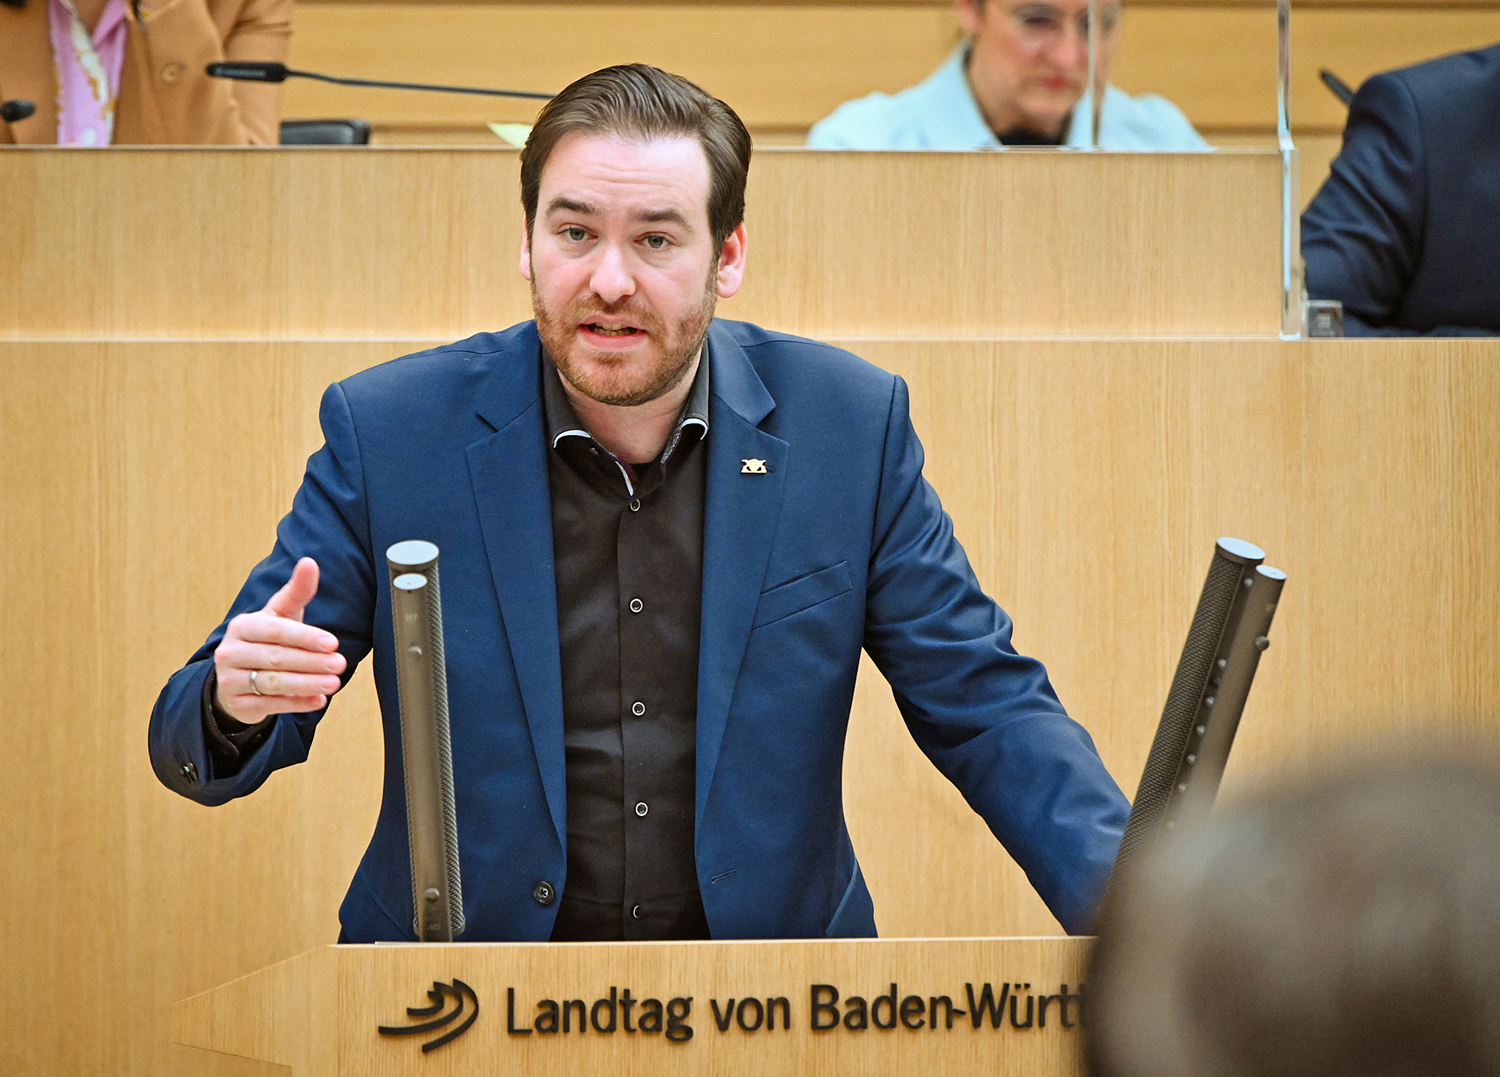 Foto: Der Landtagsabgeordnete Andreas Sturm (CDU) am 02. Februar während seiner Rede im Landtag von Baden-Württemberg.